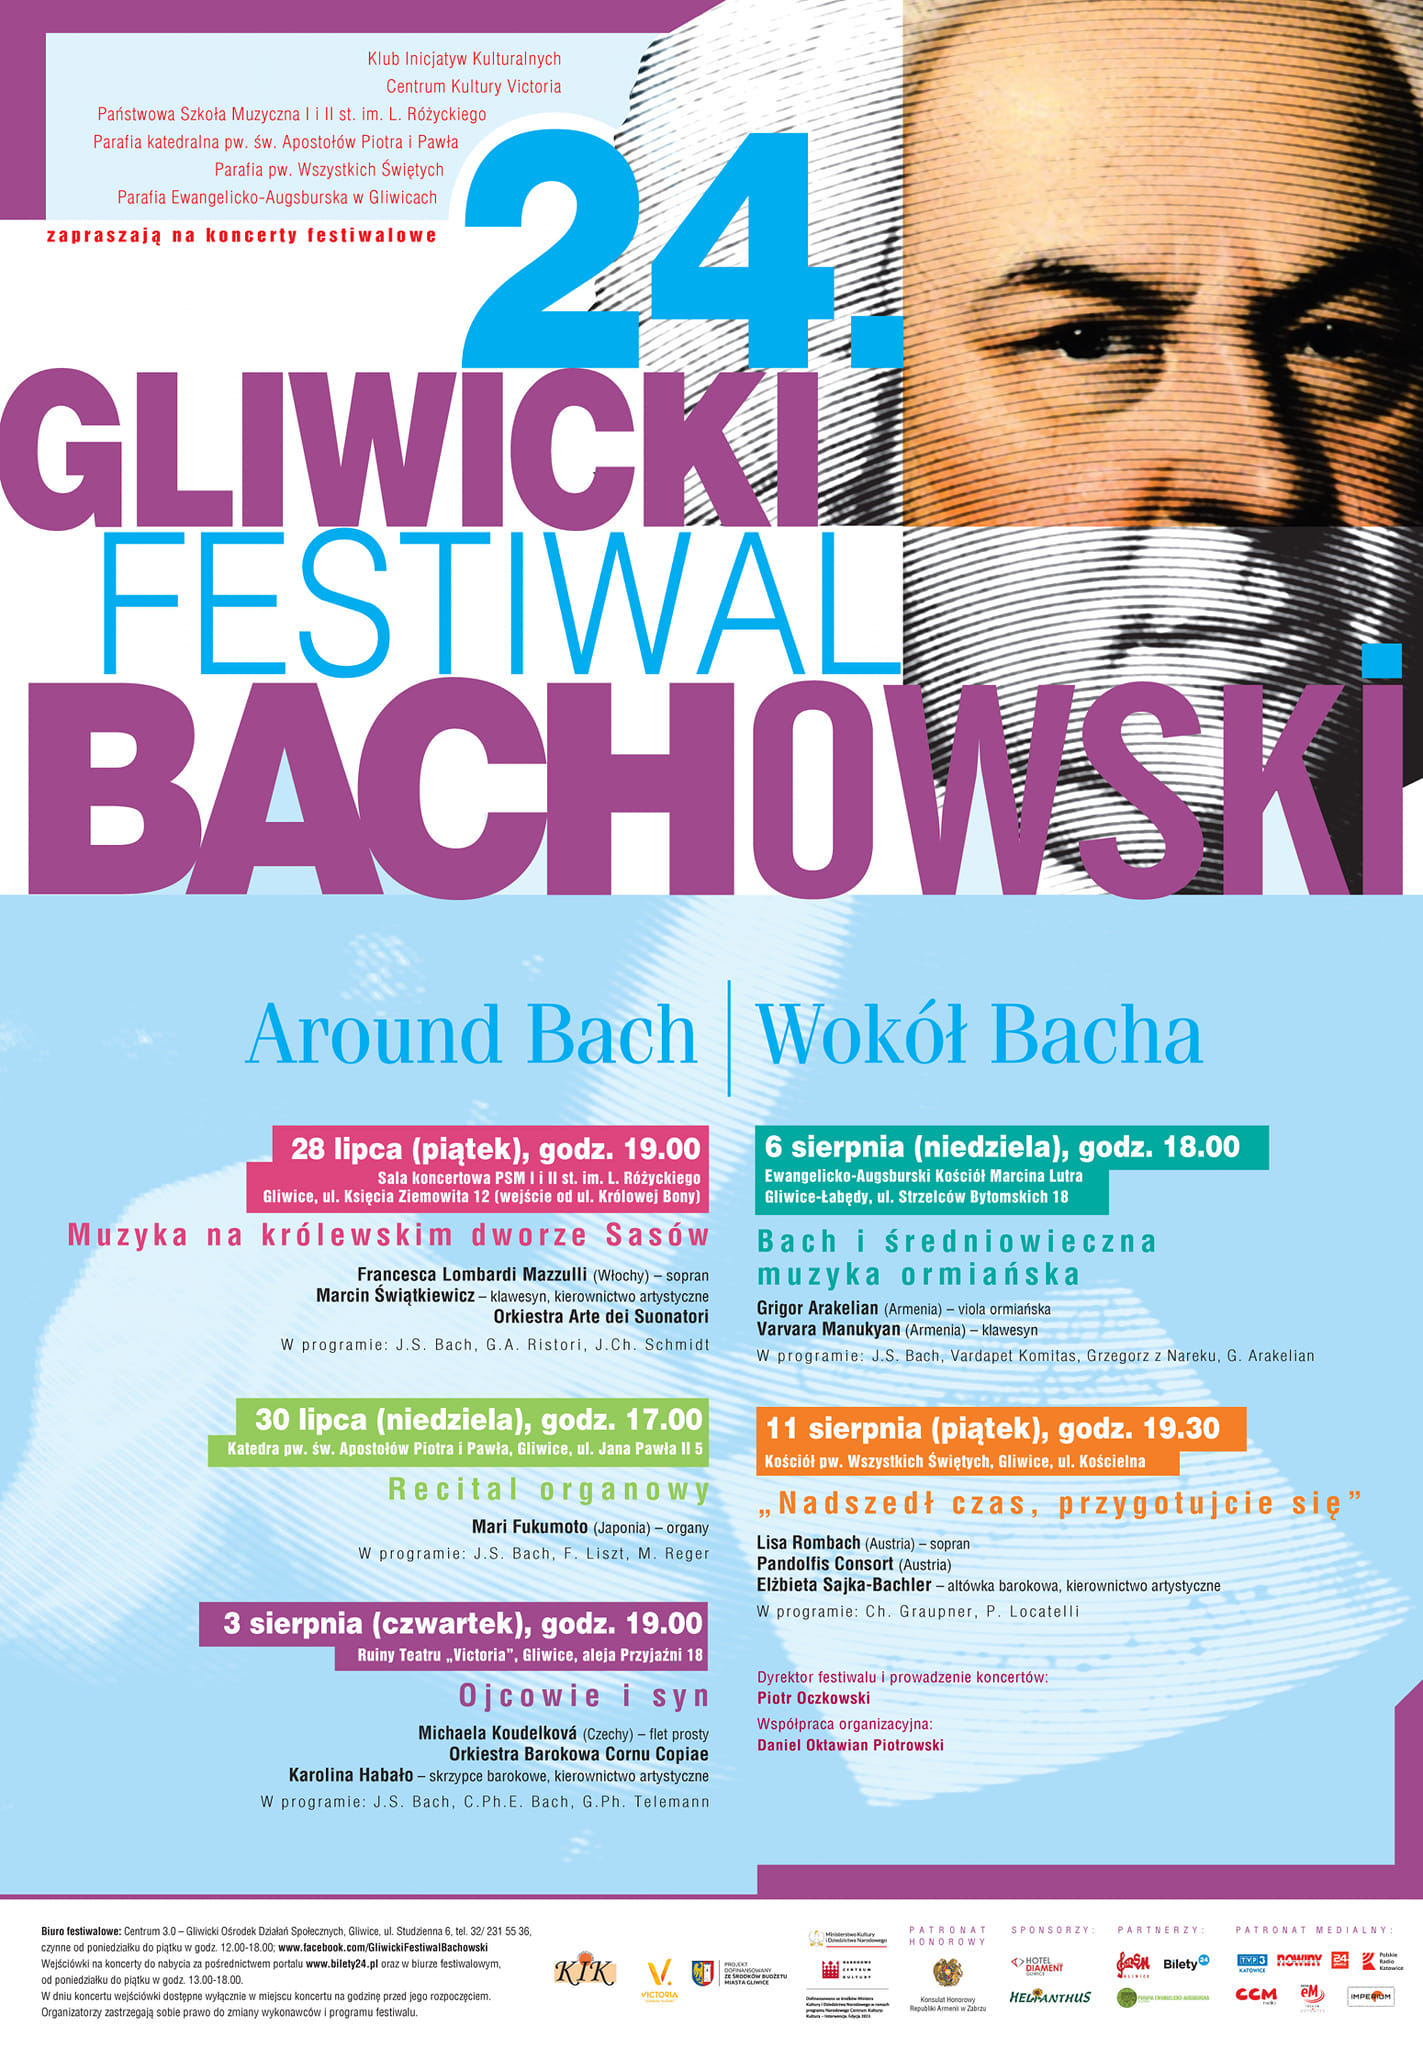 Plakat promujący Gliwicki Festiwal Bachowski